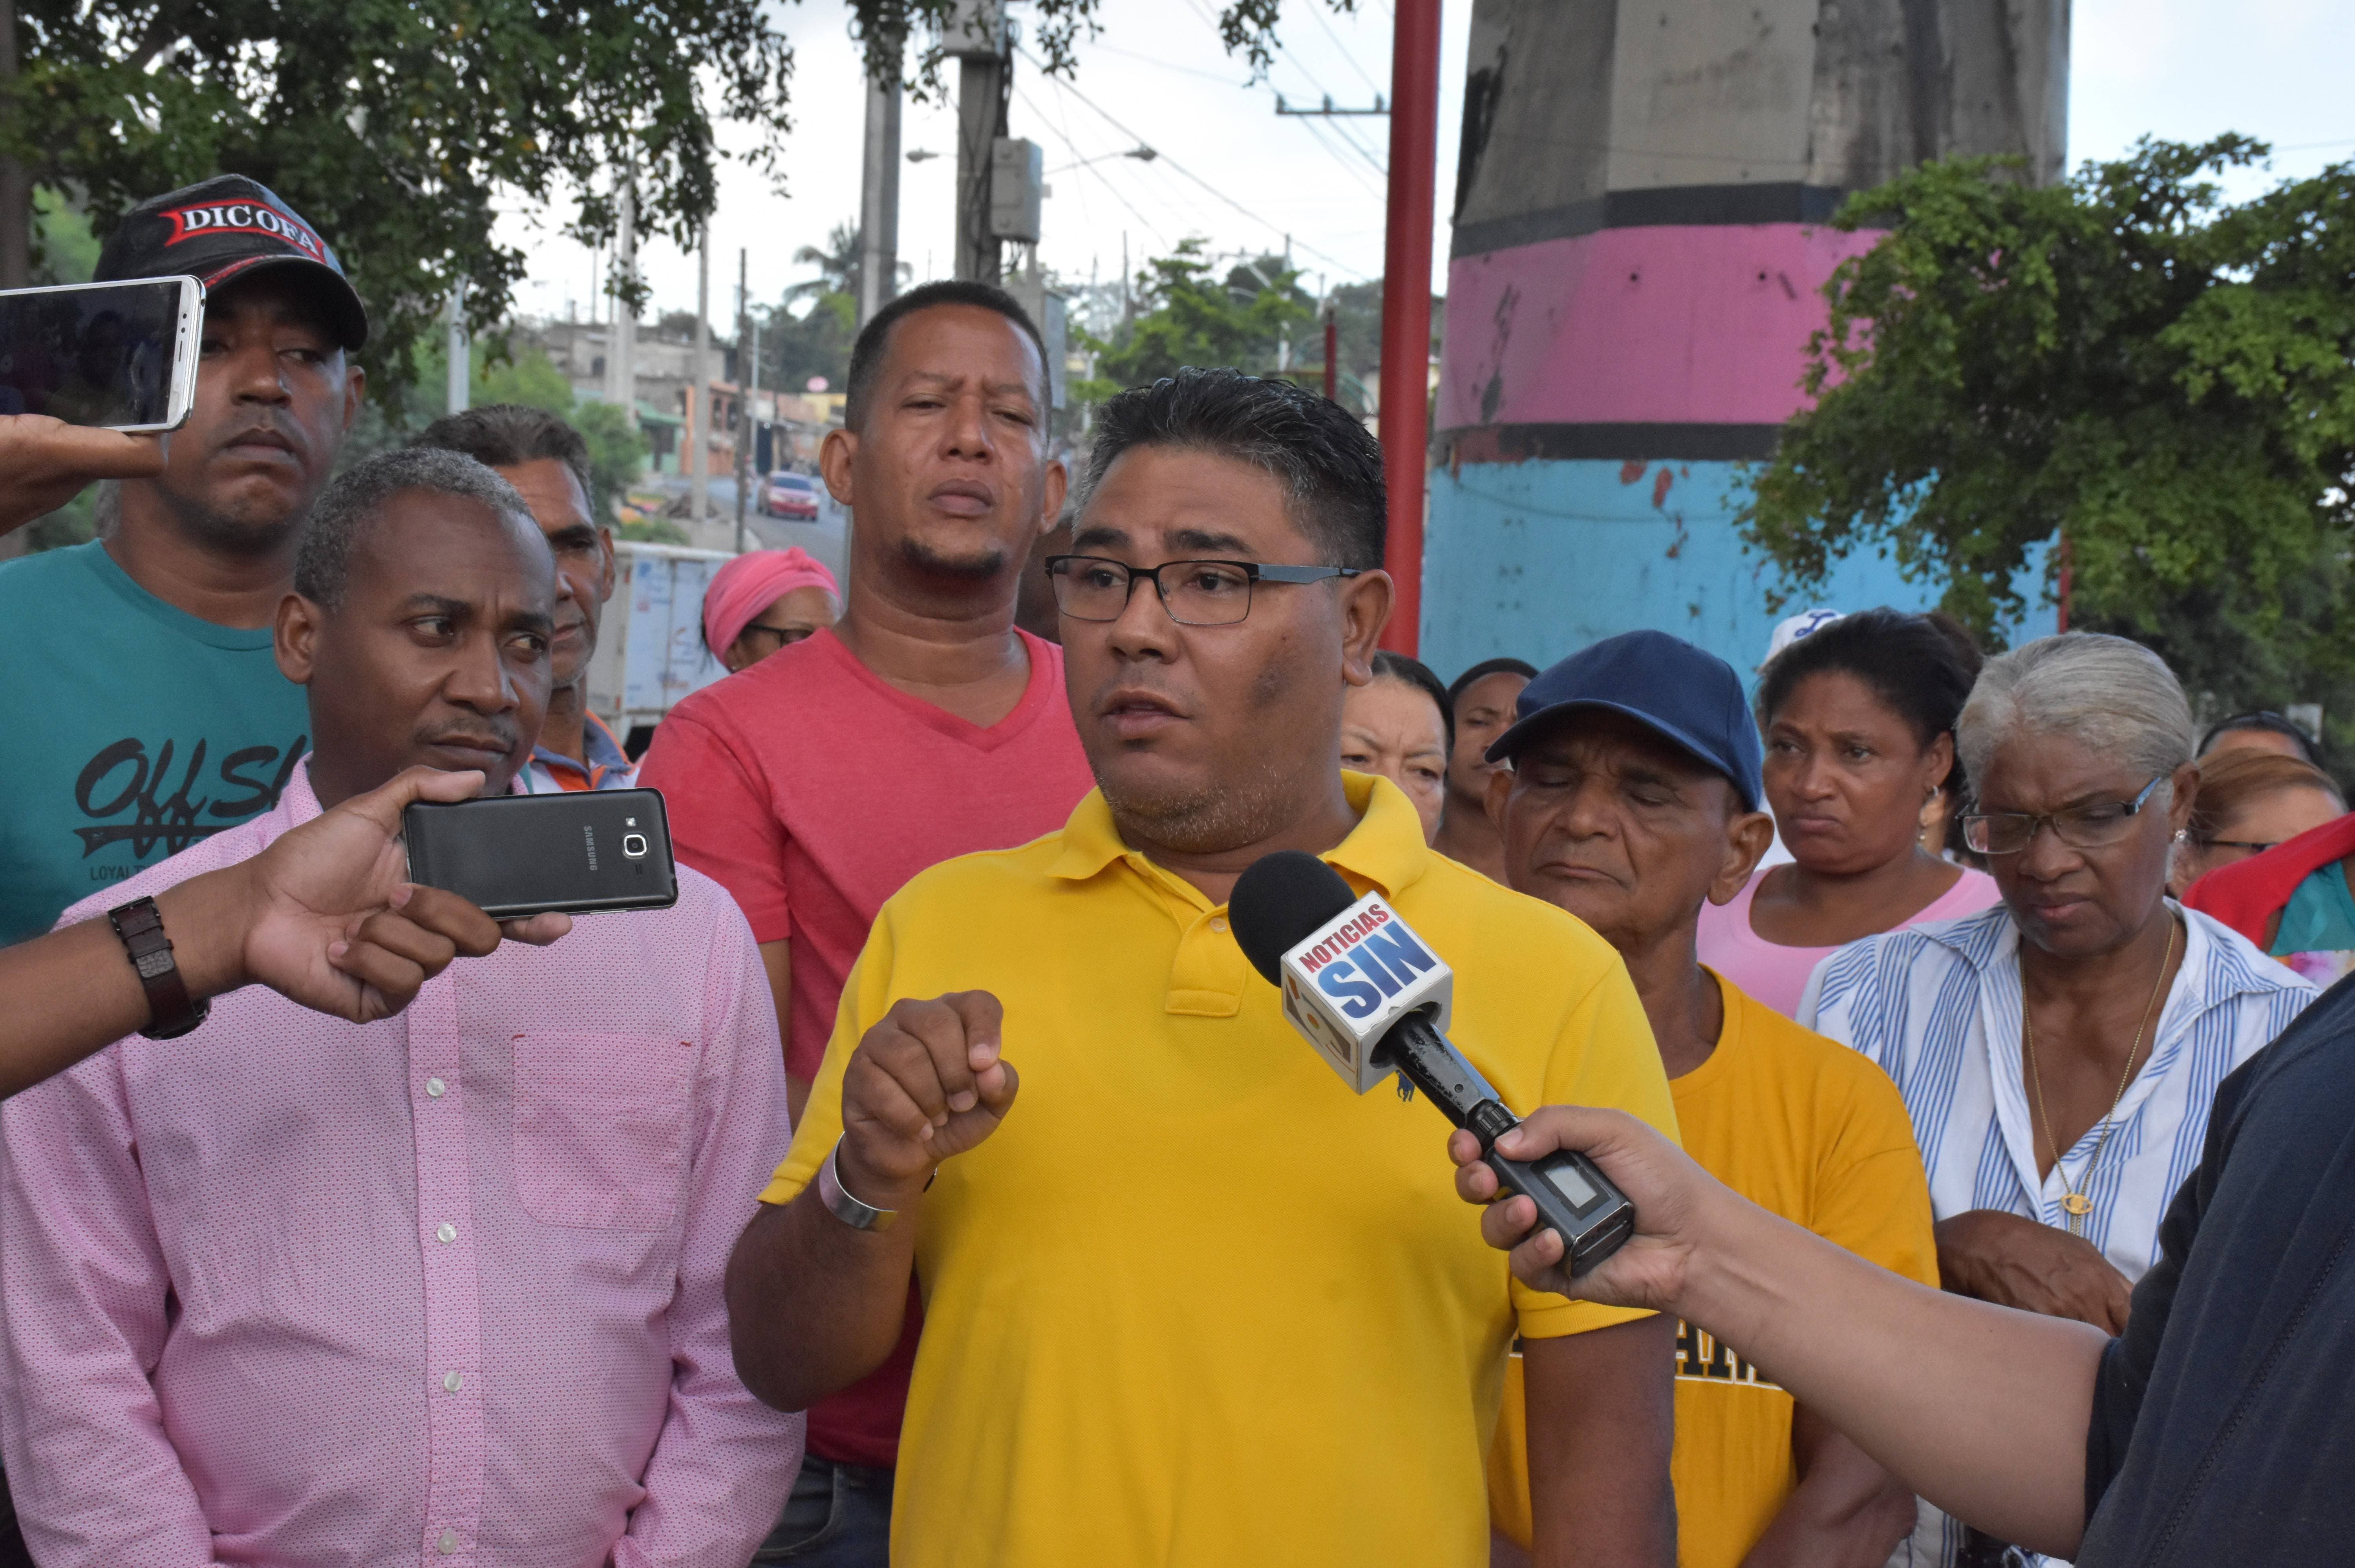 Organizaciones exigen retomar diálogo en proyecto Nuevo Domingo Savio